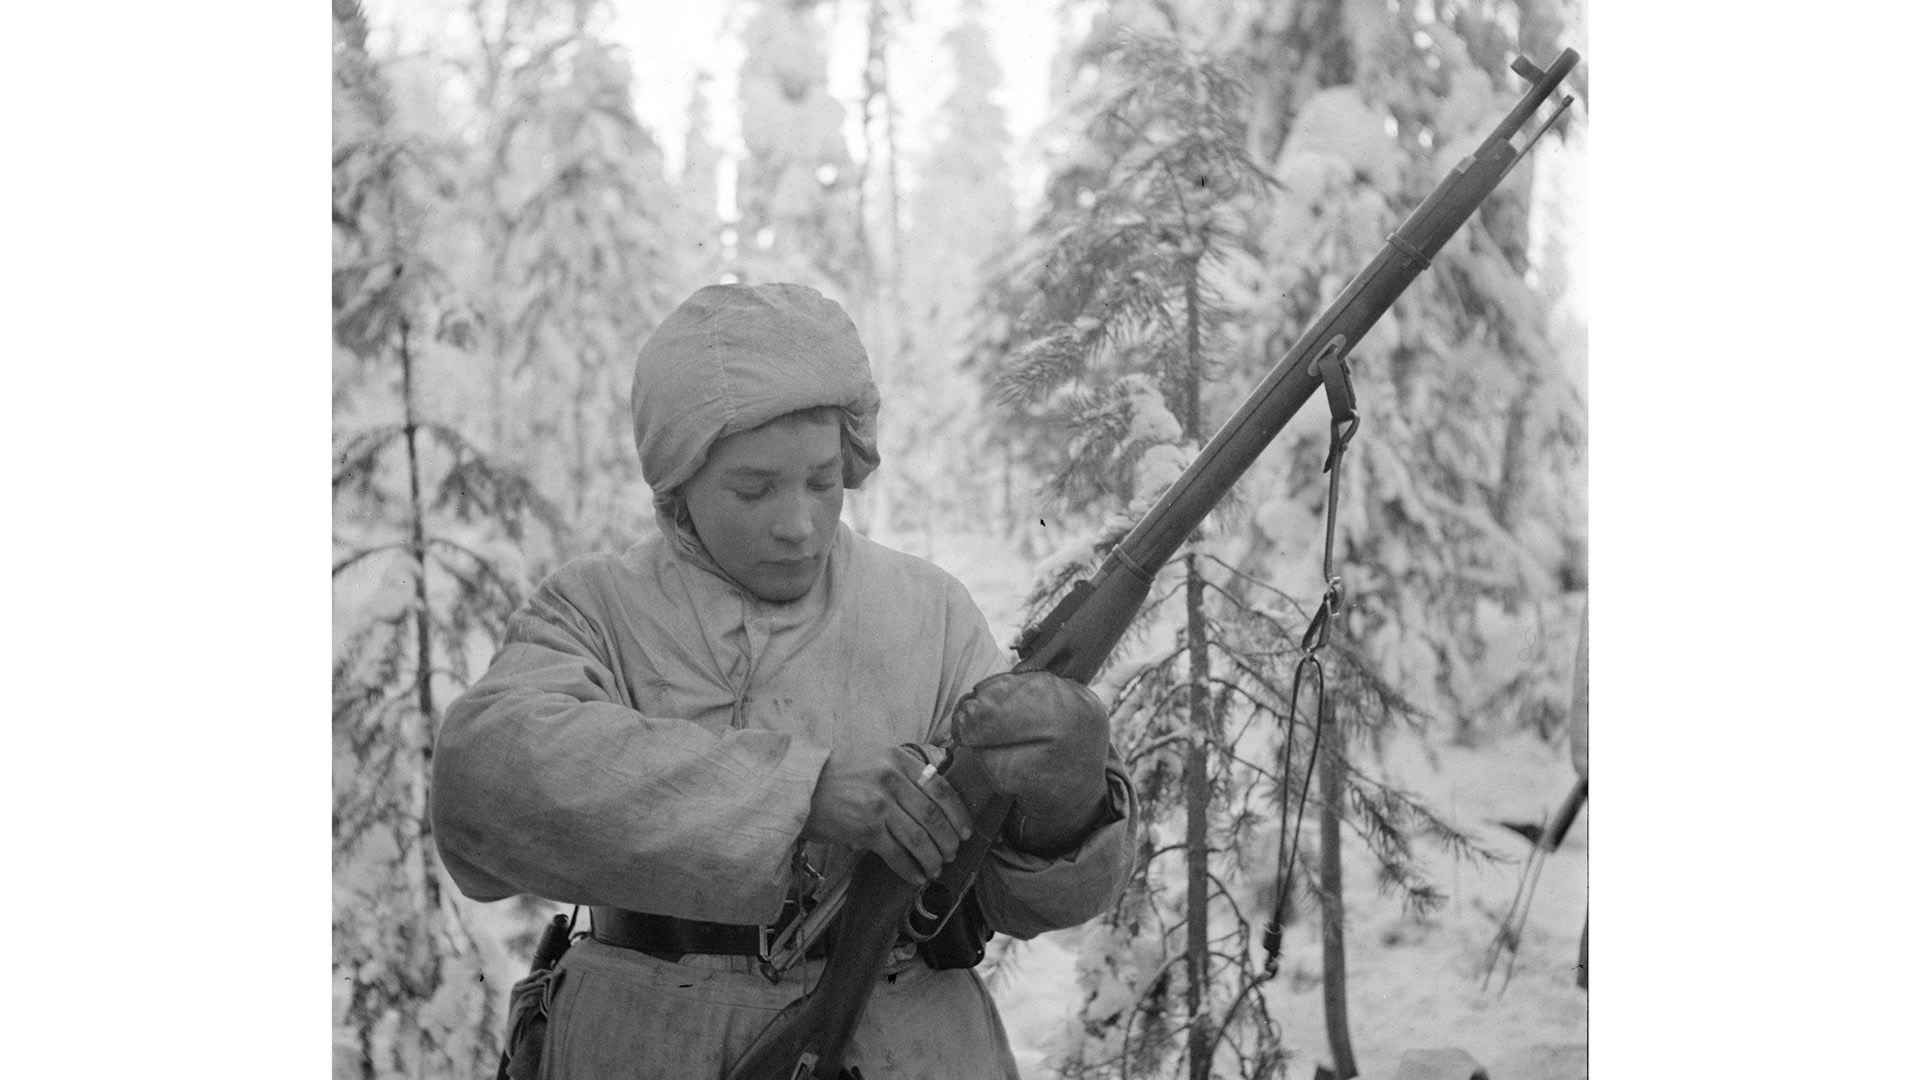 A História a Cores - How the Mosin-Nagant became the world's most feared  rifle 🇵🇹 Color by JHM A famosa Mosin-Nagant M1891, uma espingarda que  serviu no Império Russo, na União Soviética